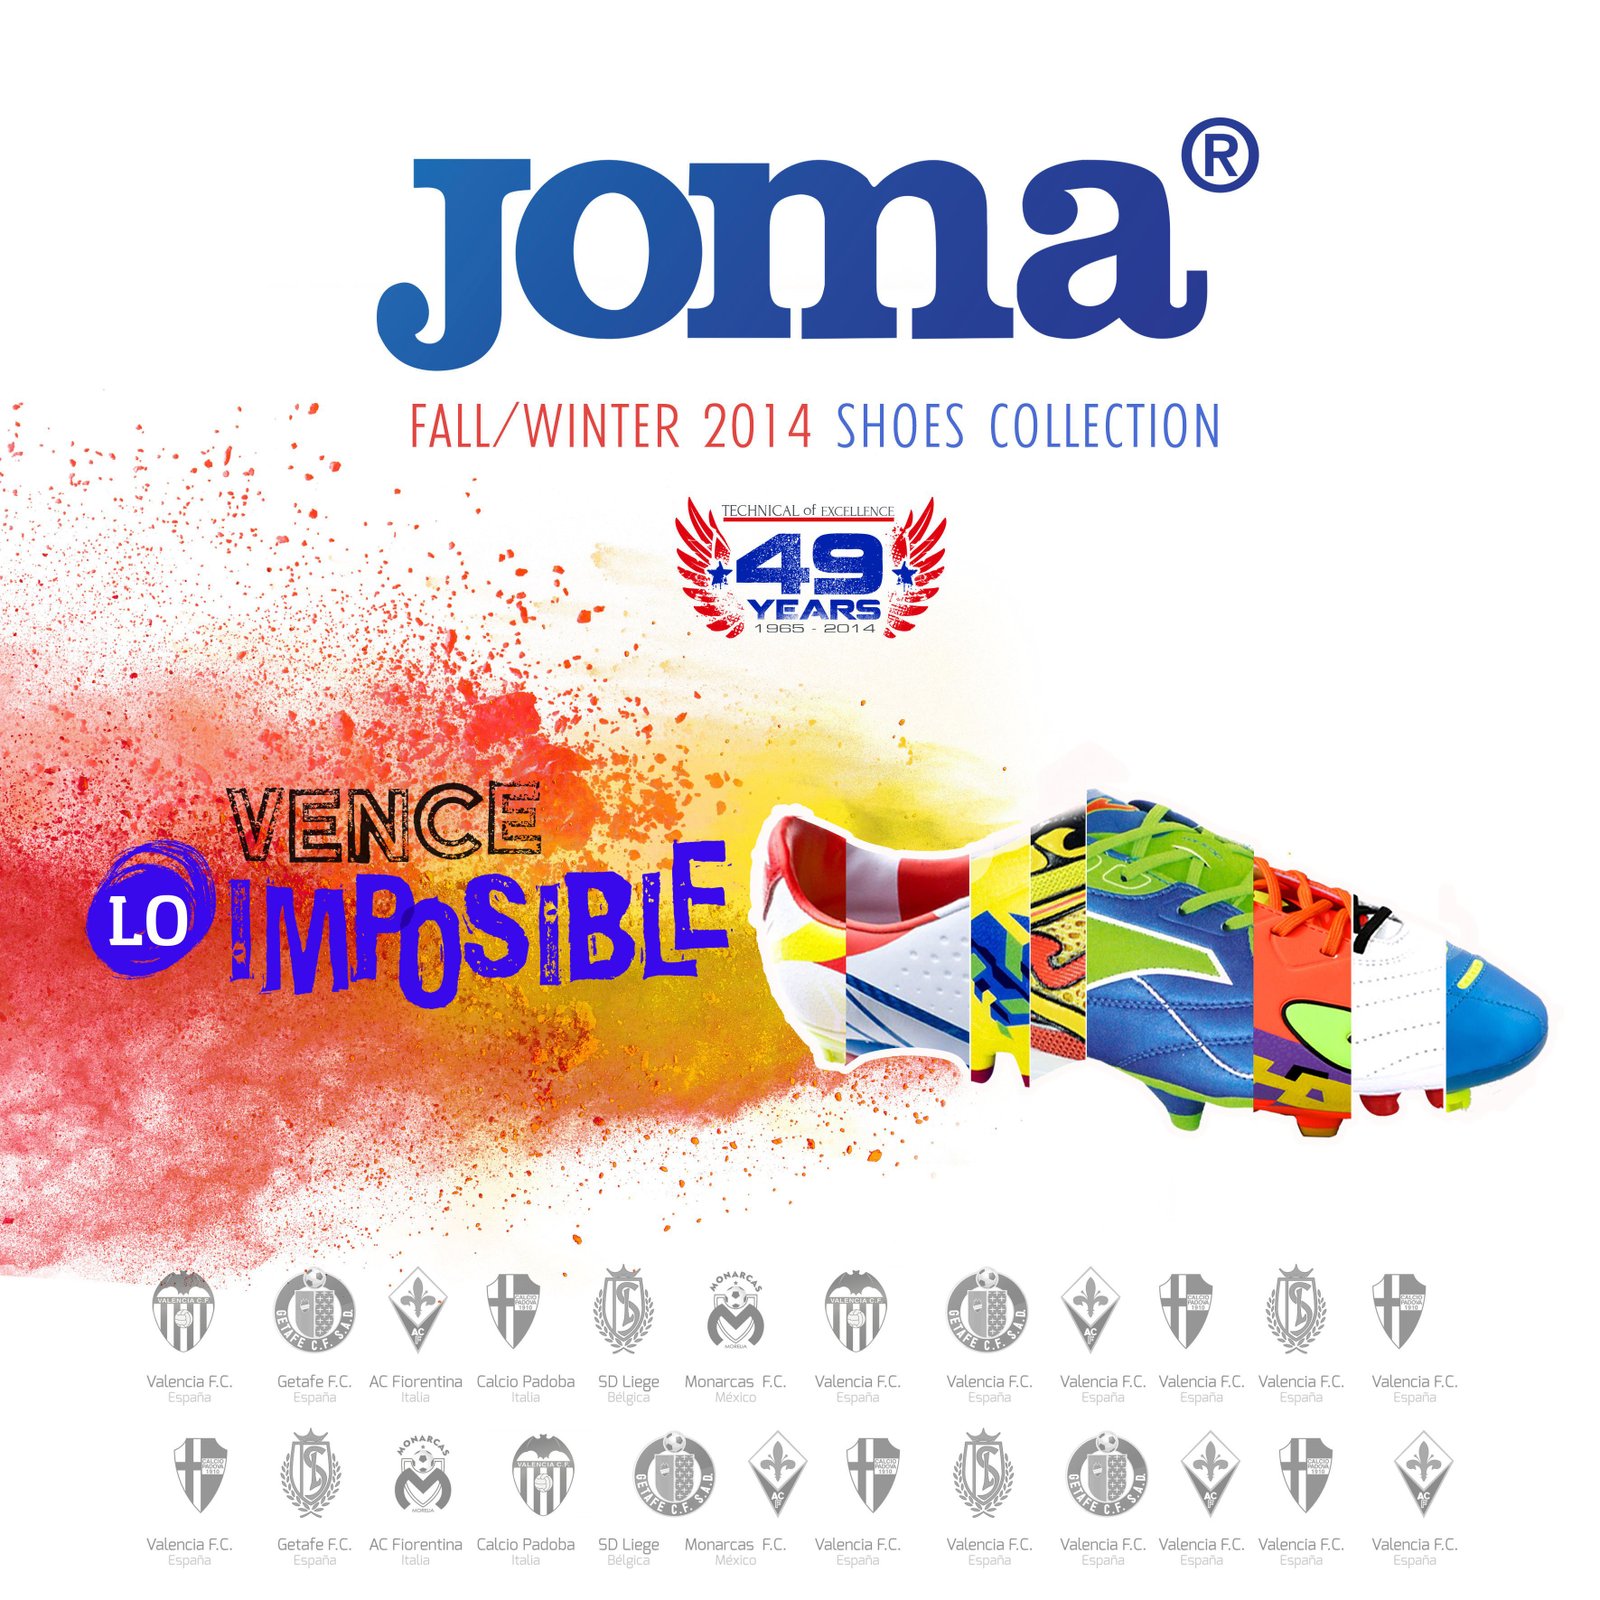 campaña ATL para zapatillas Joma publicidad agencia comunicacion branding fotografia